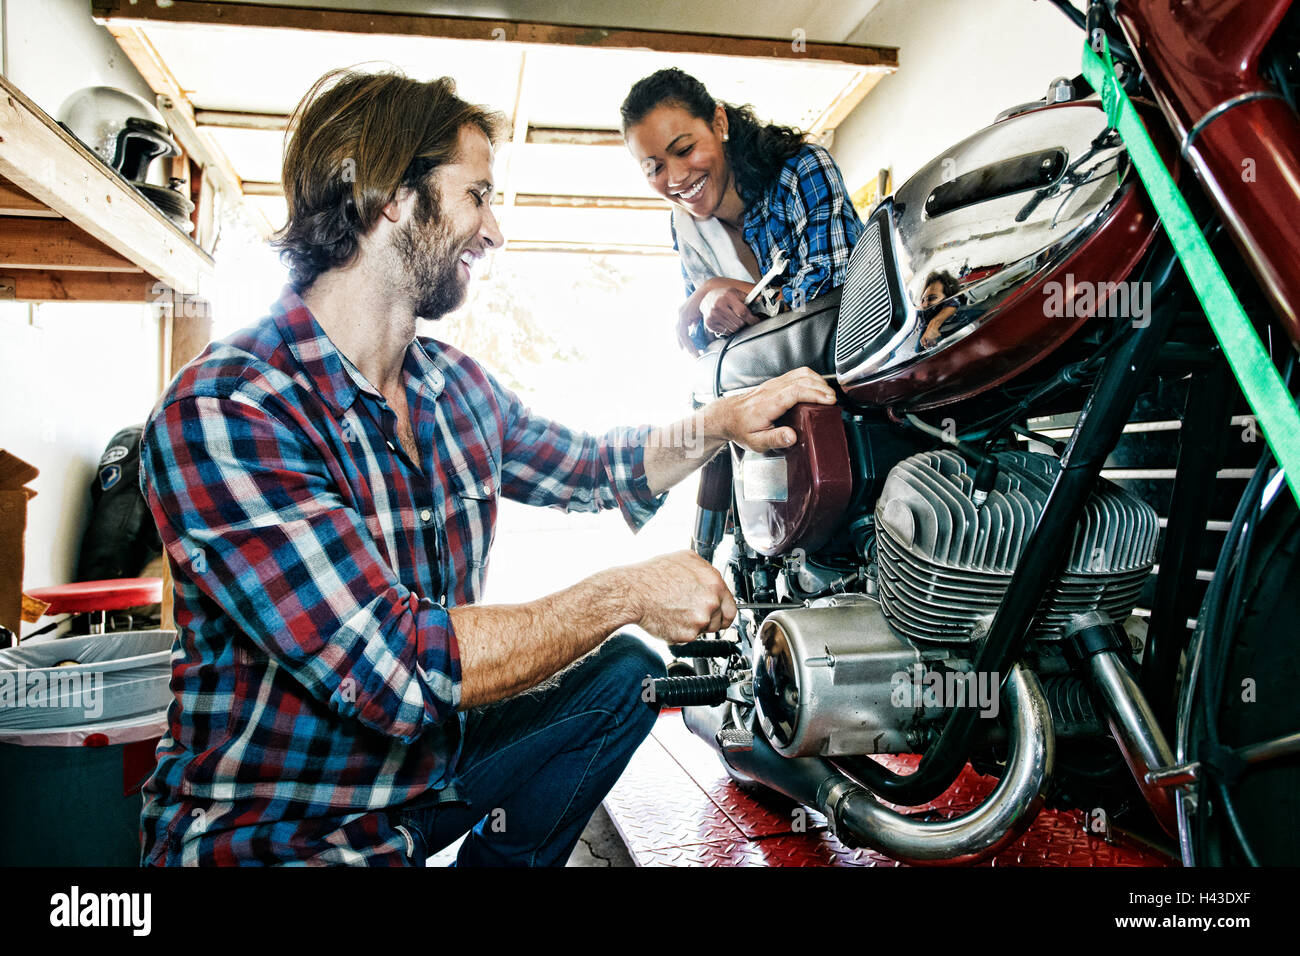 Woman watching man repairing motorcycle in garage Stock Photo